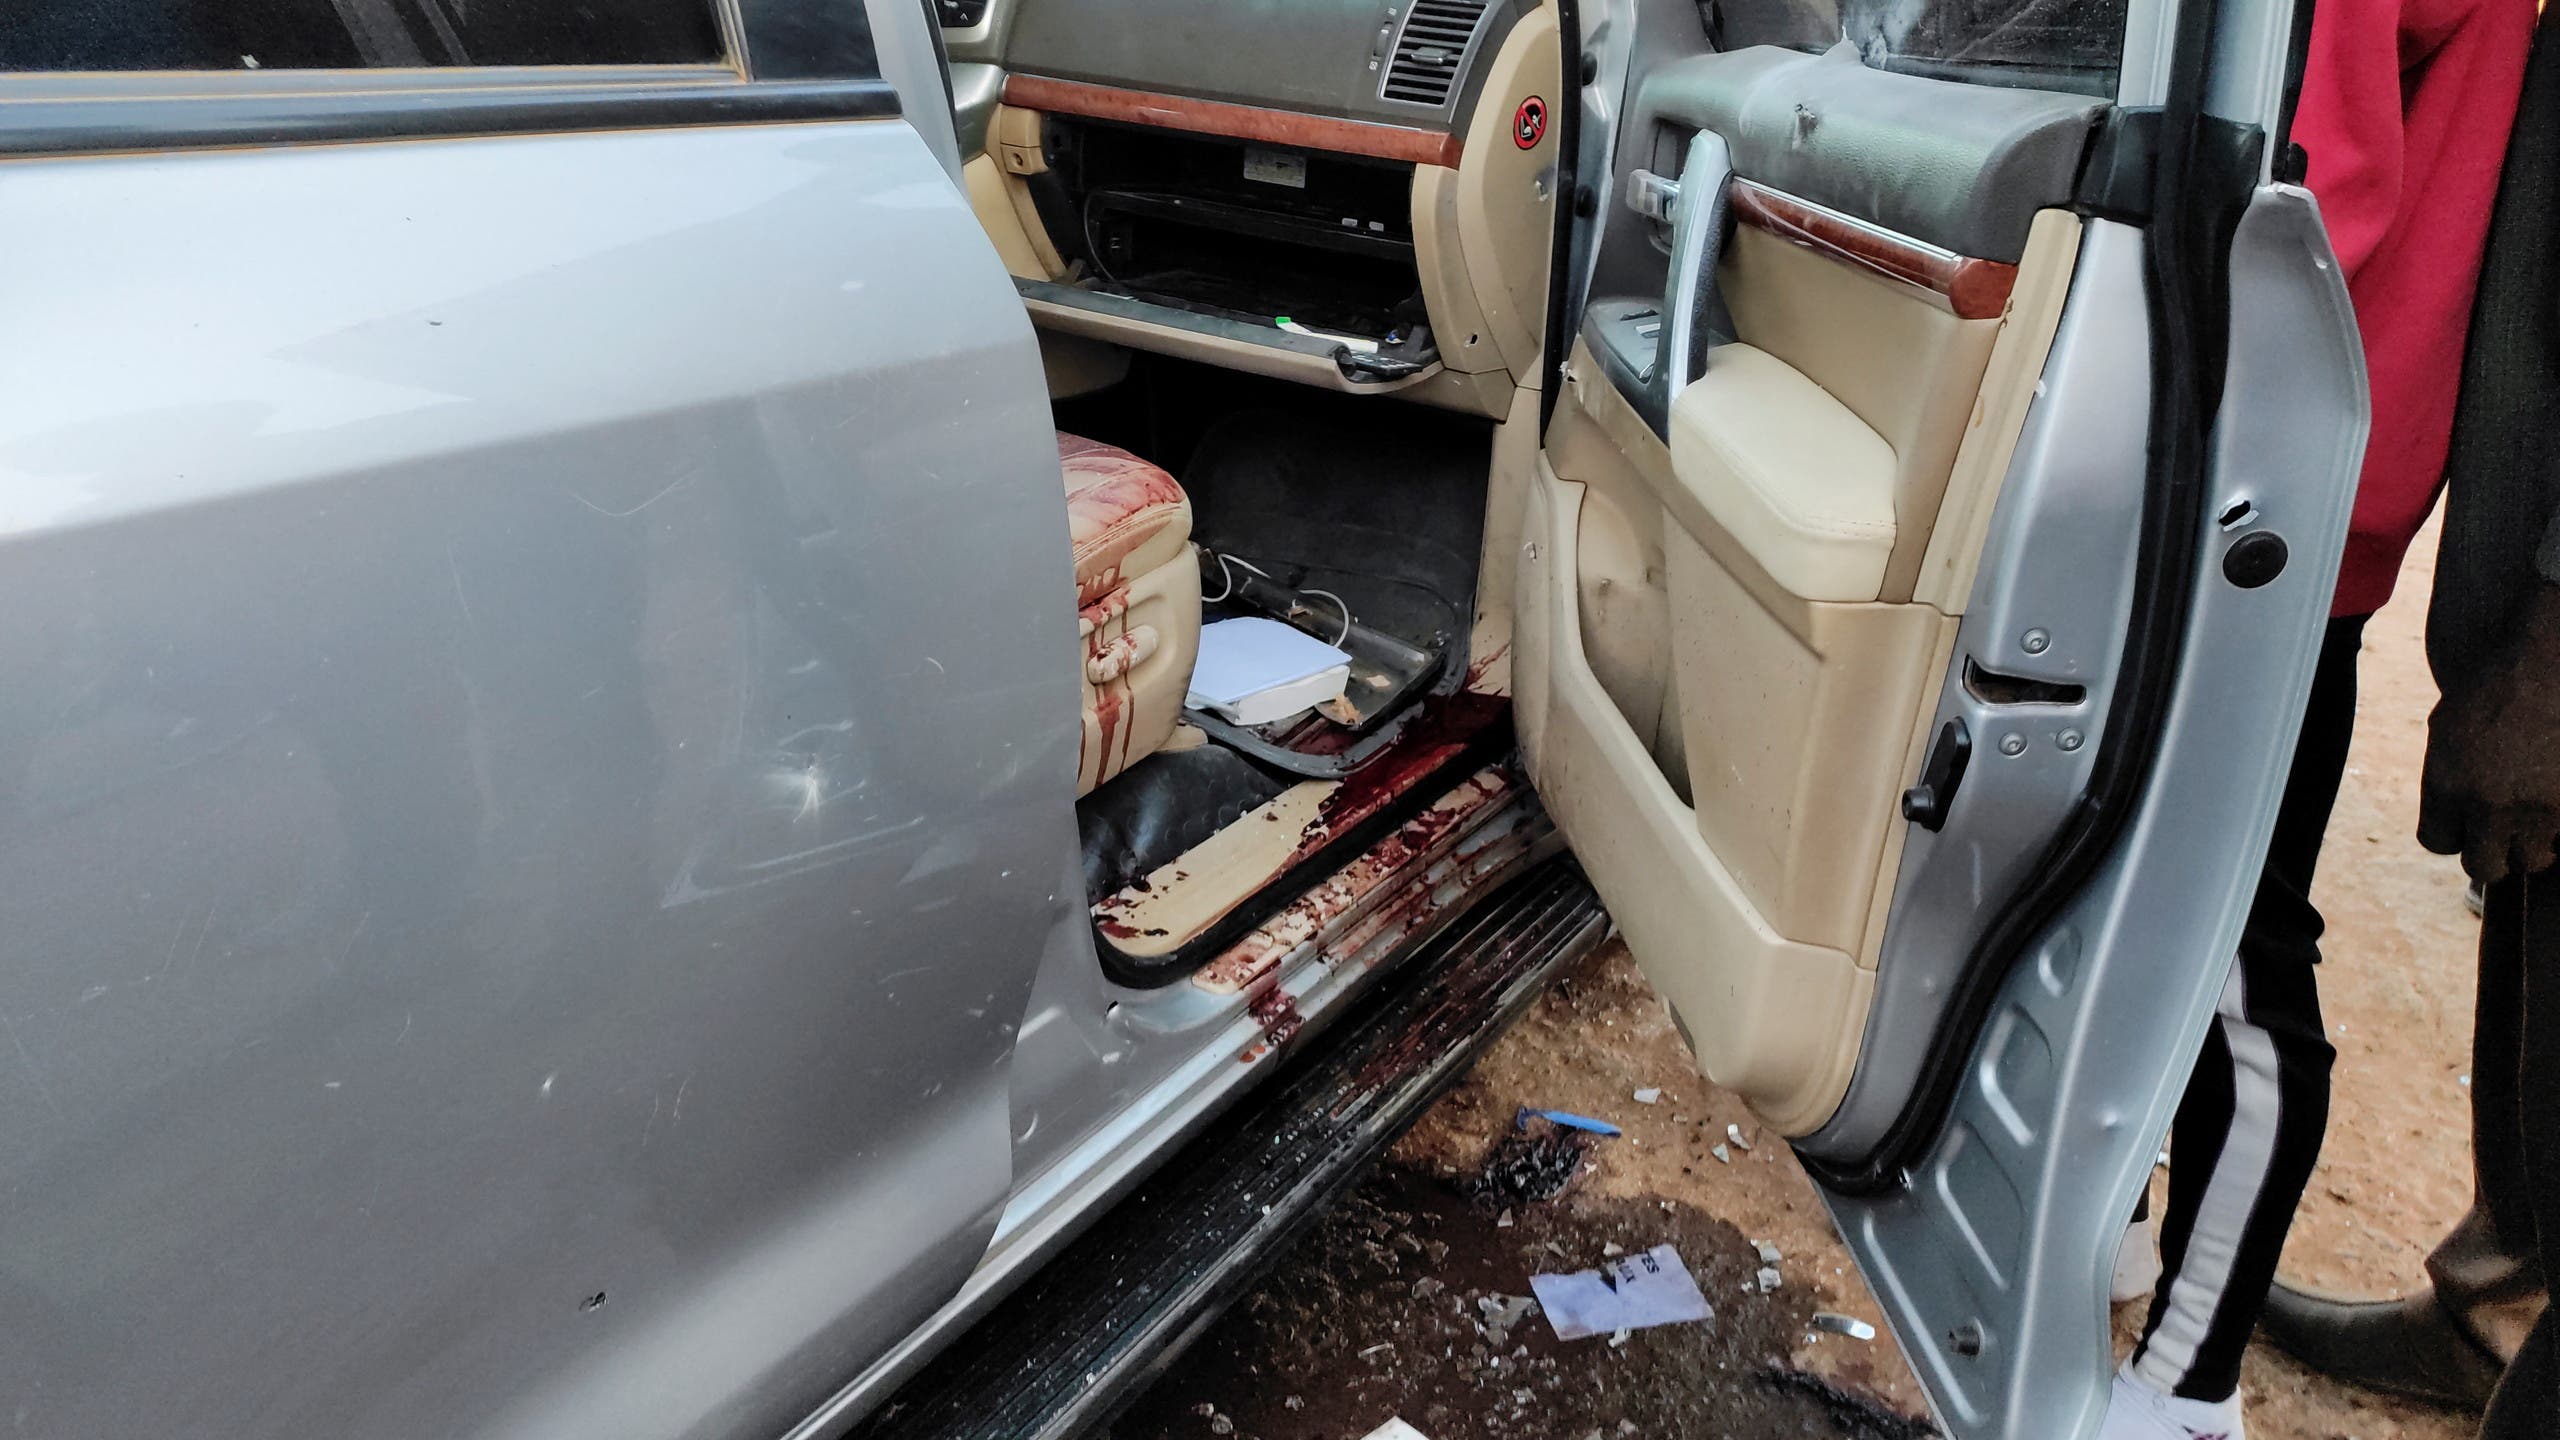  عربات تابعة للرئاسة ملطخة بالدماء  قرب مقر إقامة الرئيس